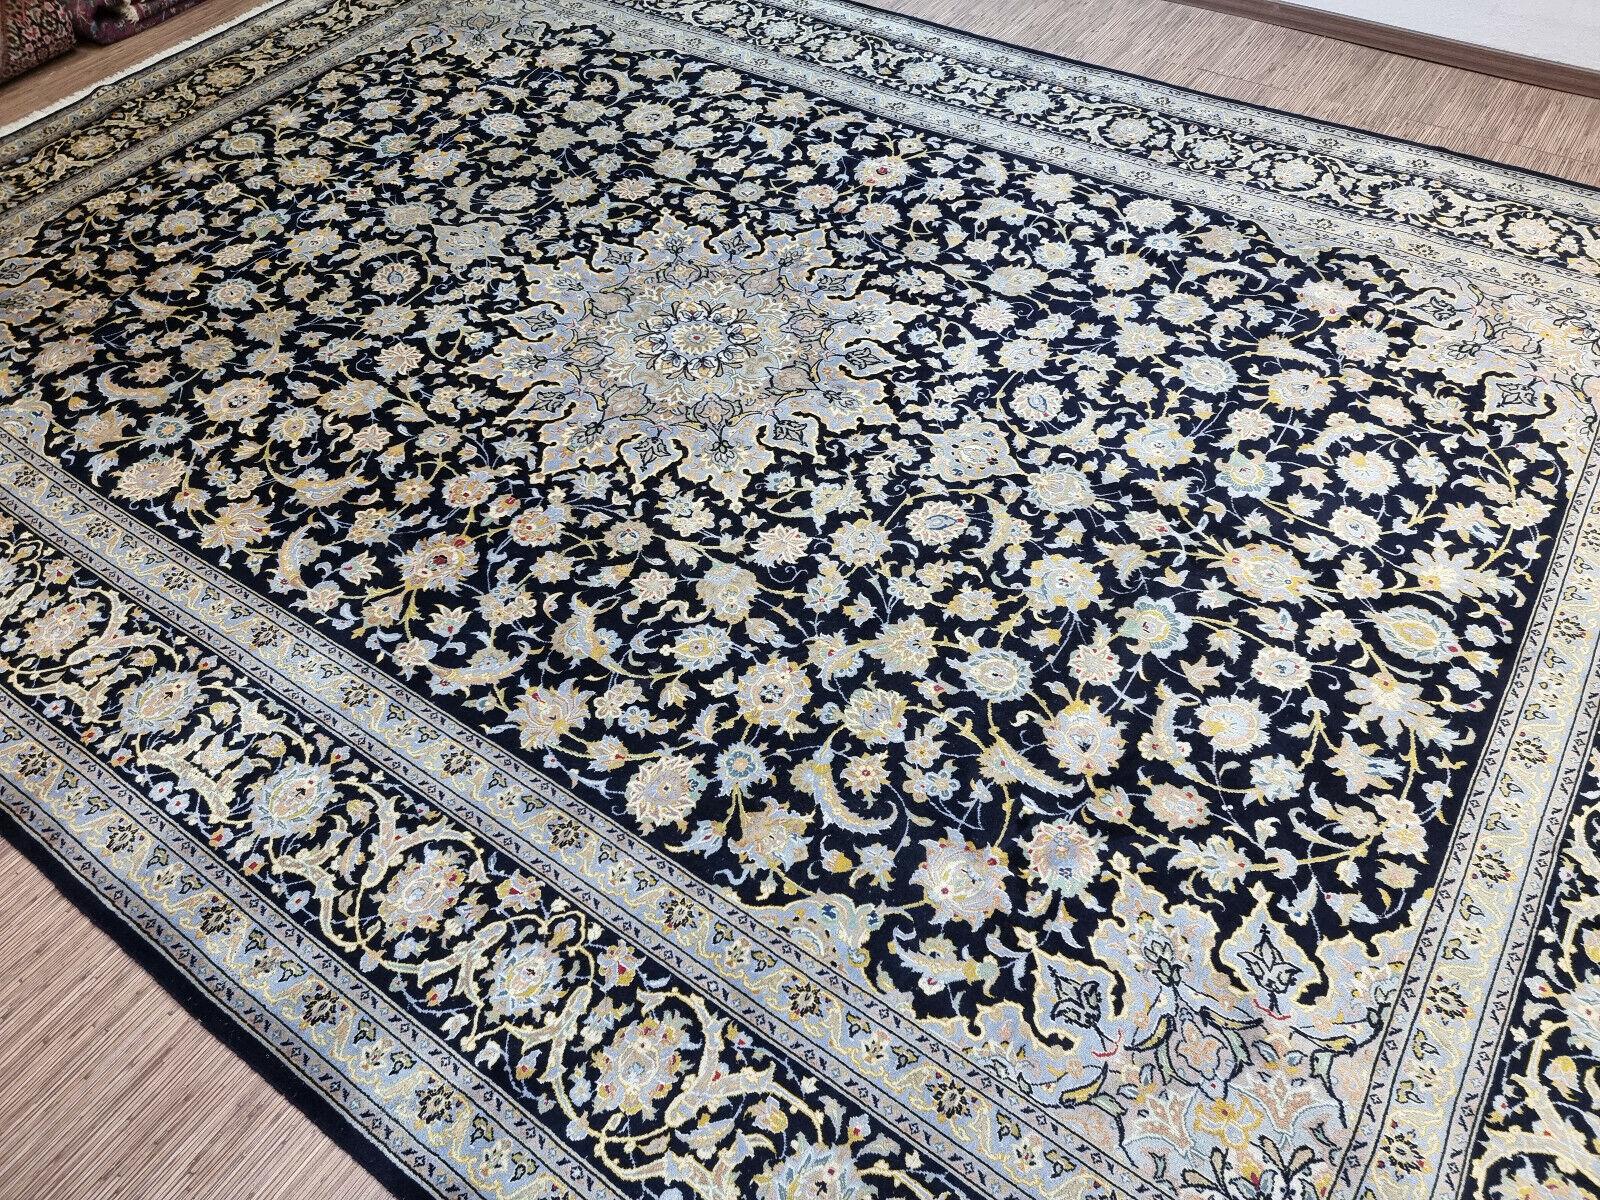 Transformez votre espace avec ce tapis surdimensionné Vintage By Kashan fait à la main. Ce magnifique tapis mesure 310 cm x 440 cm (10,1' x 14,4'), ce qui le rend idéal pour les grandes pièces et les grands espaces.

Palette de couleurs : Le tapis